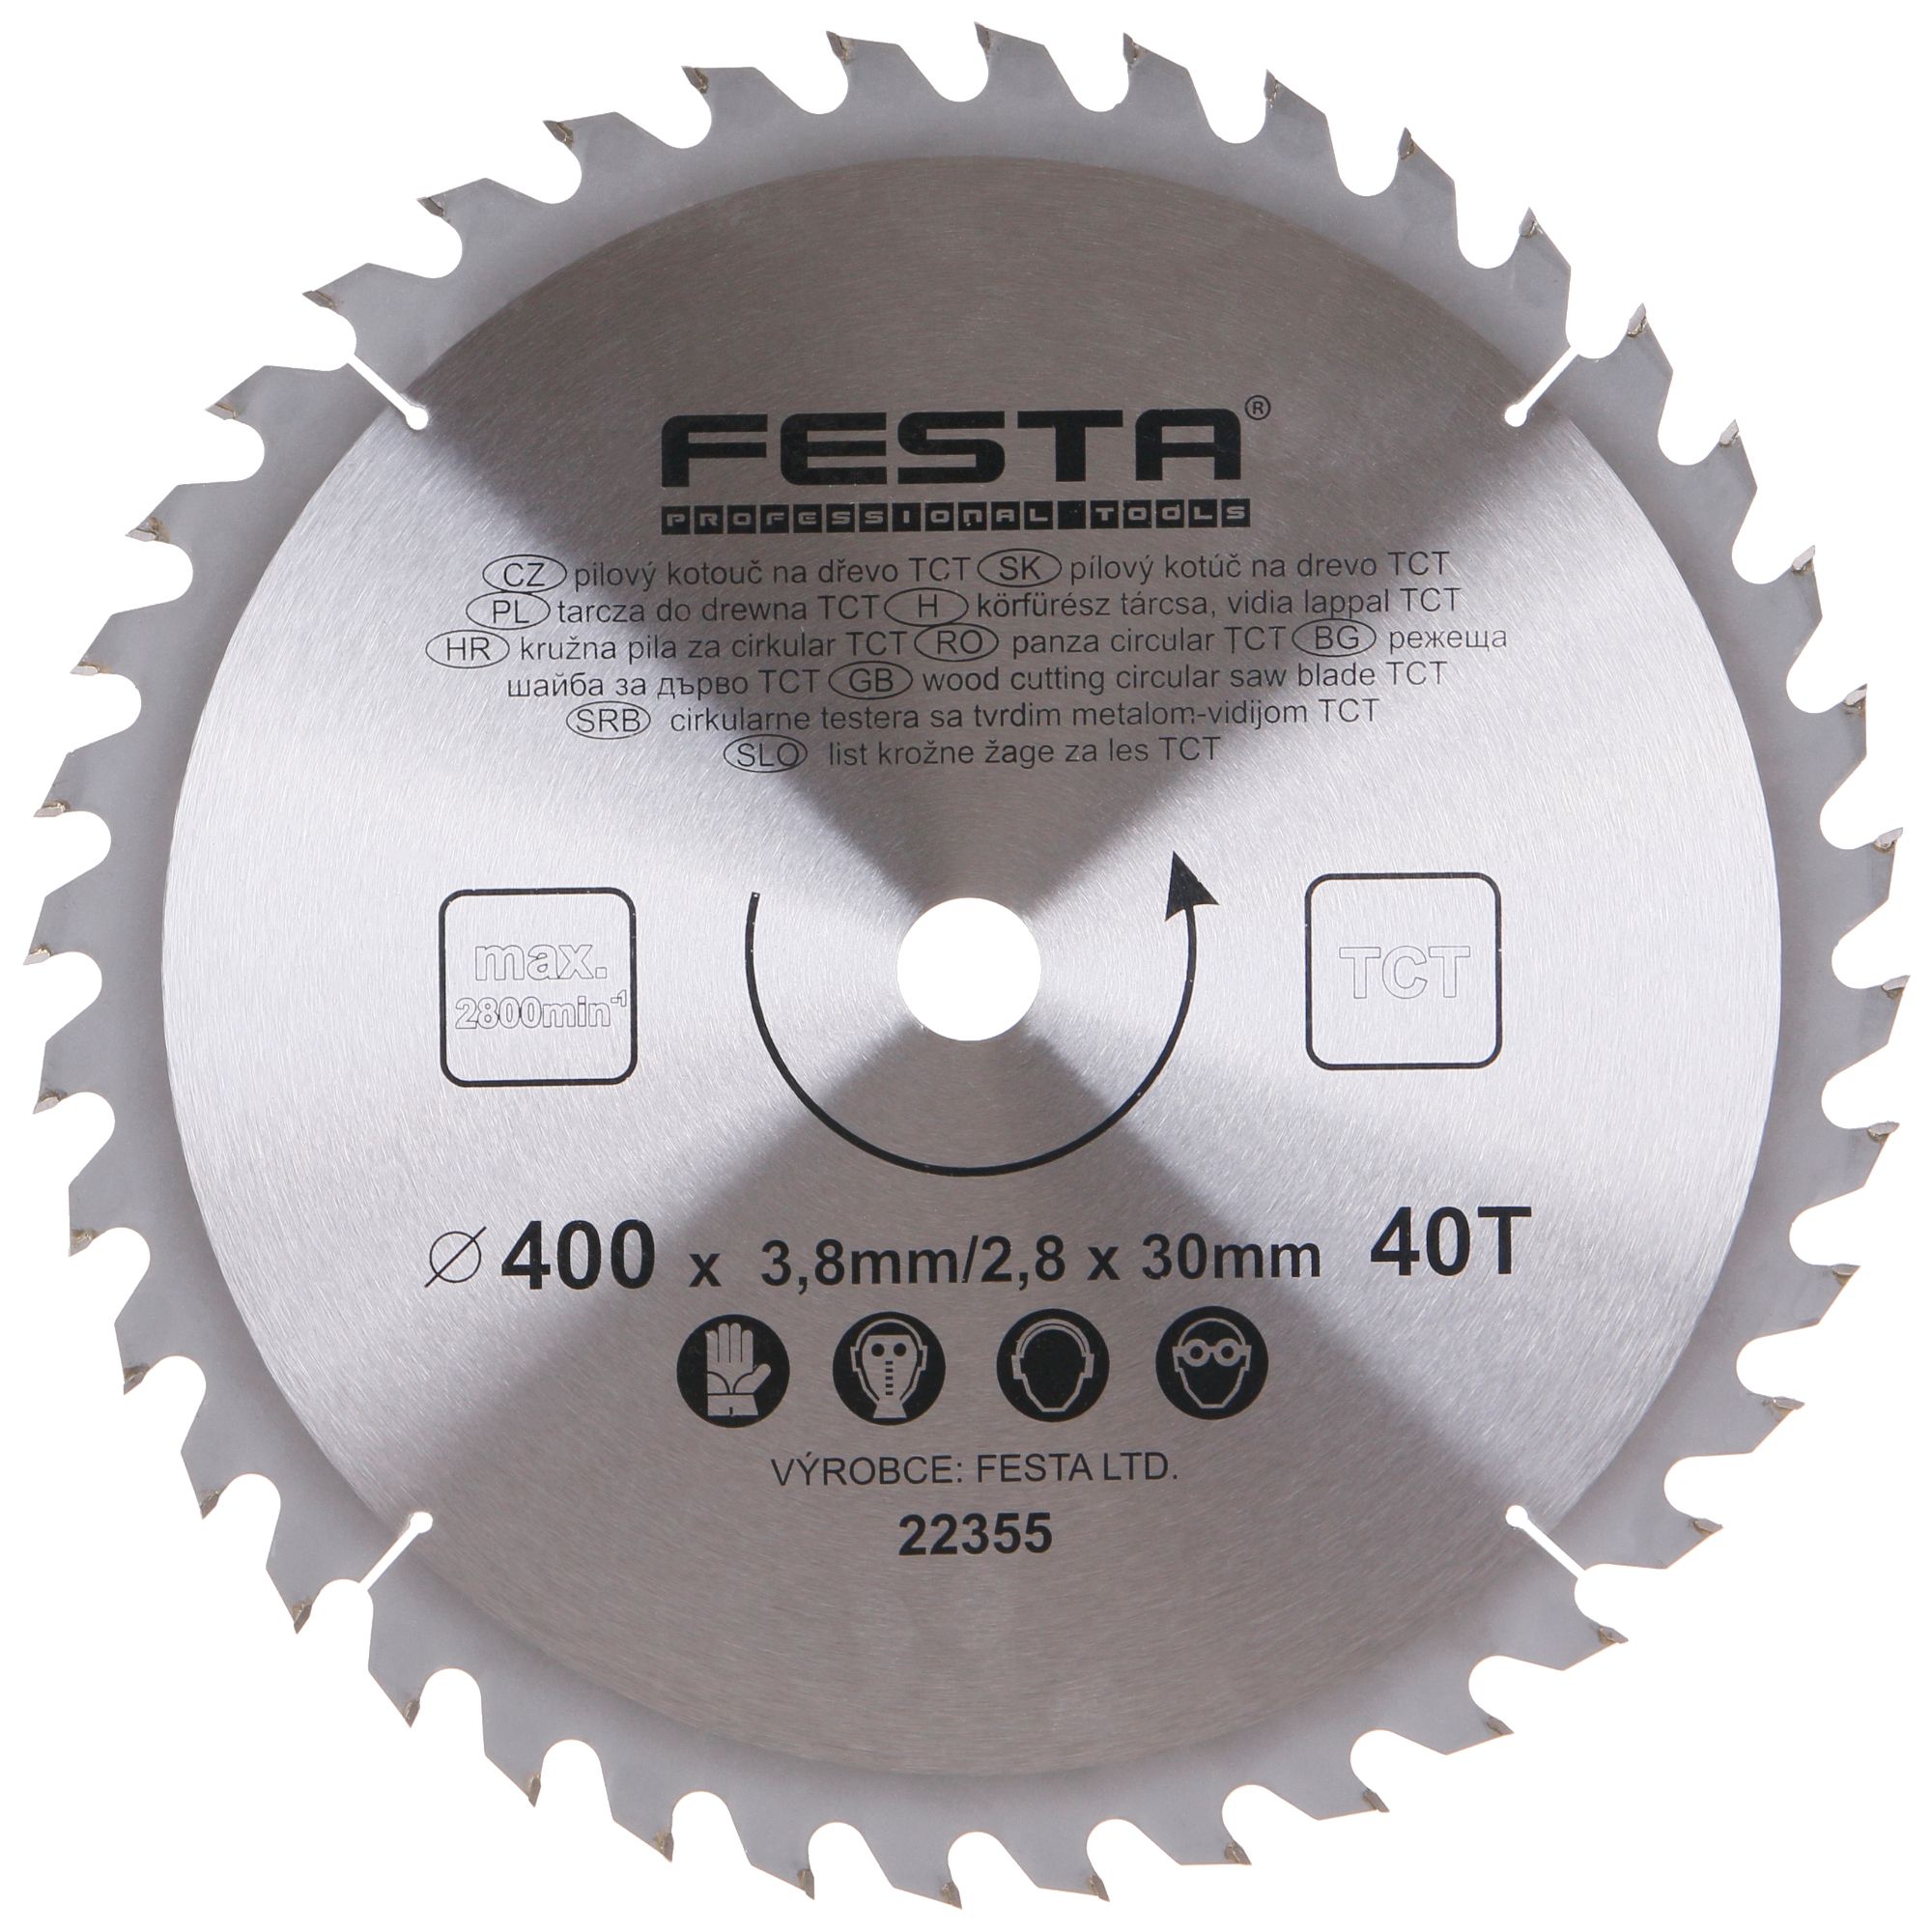 FESTA 22355 Kotouč pilový, na dřevo, 400mm, 40 zubů, 30mm, 3,8mm, TCT